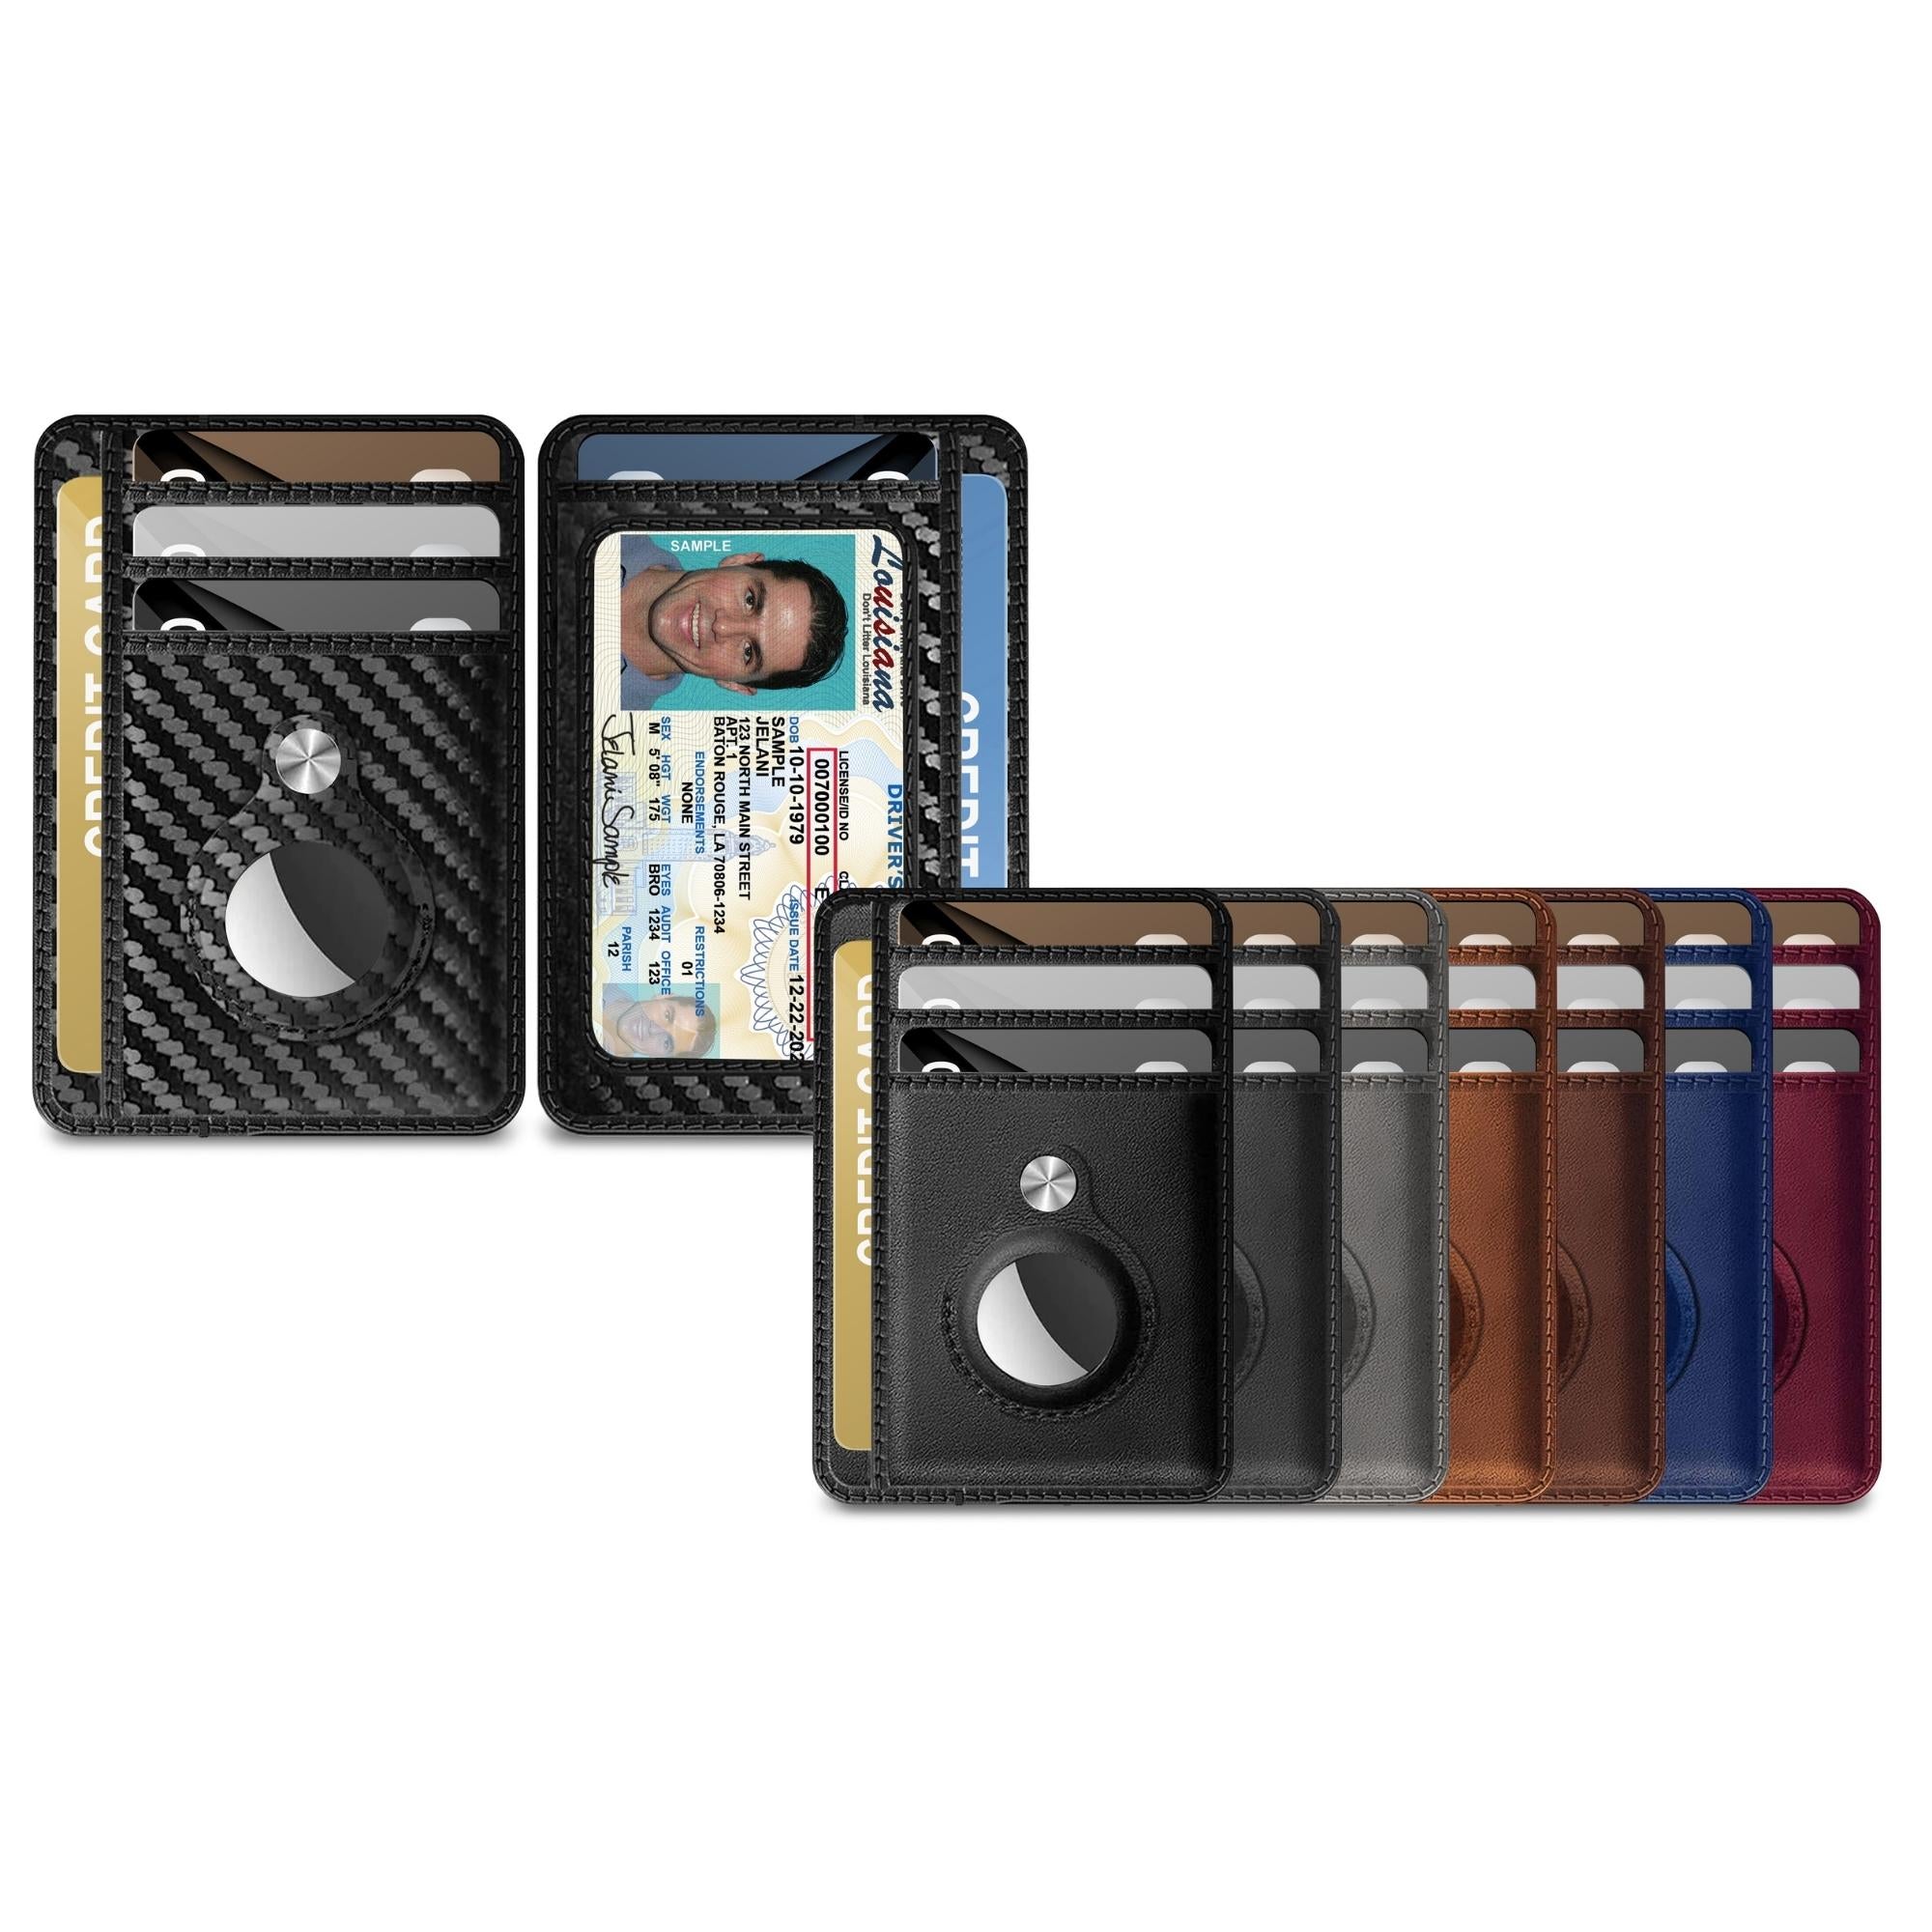 typecase Mens Wallet Card Holder: Pop Up Aluminum Case, Carbon Fiber  Leather, Smart, RFID Blocking, Slim, Minimalist, Front Pocket - 9-14 Card